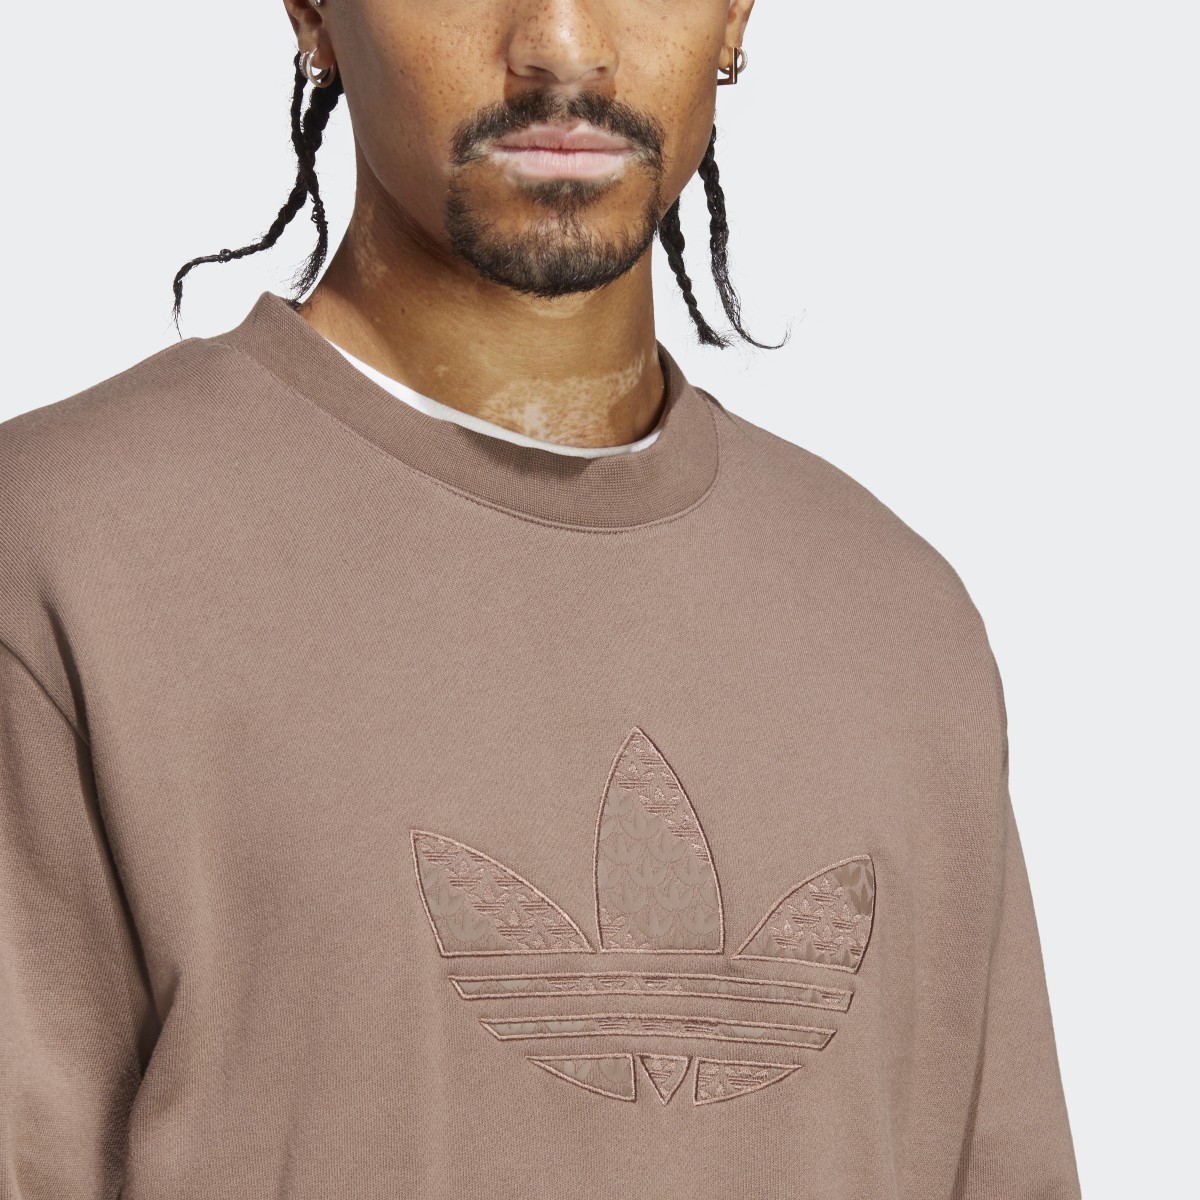 Adidas Sweatshirt. 6